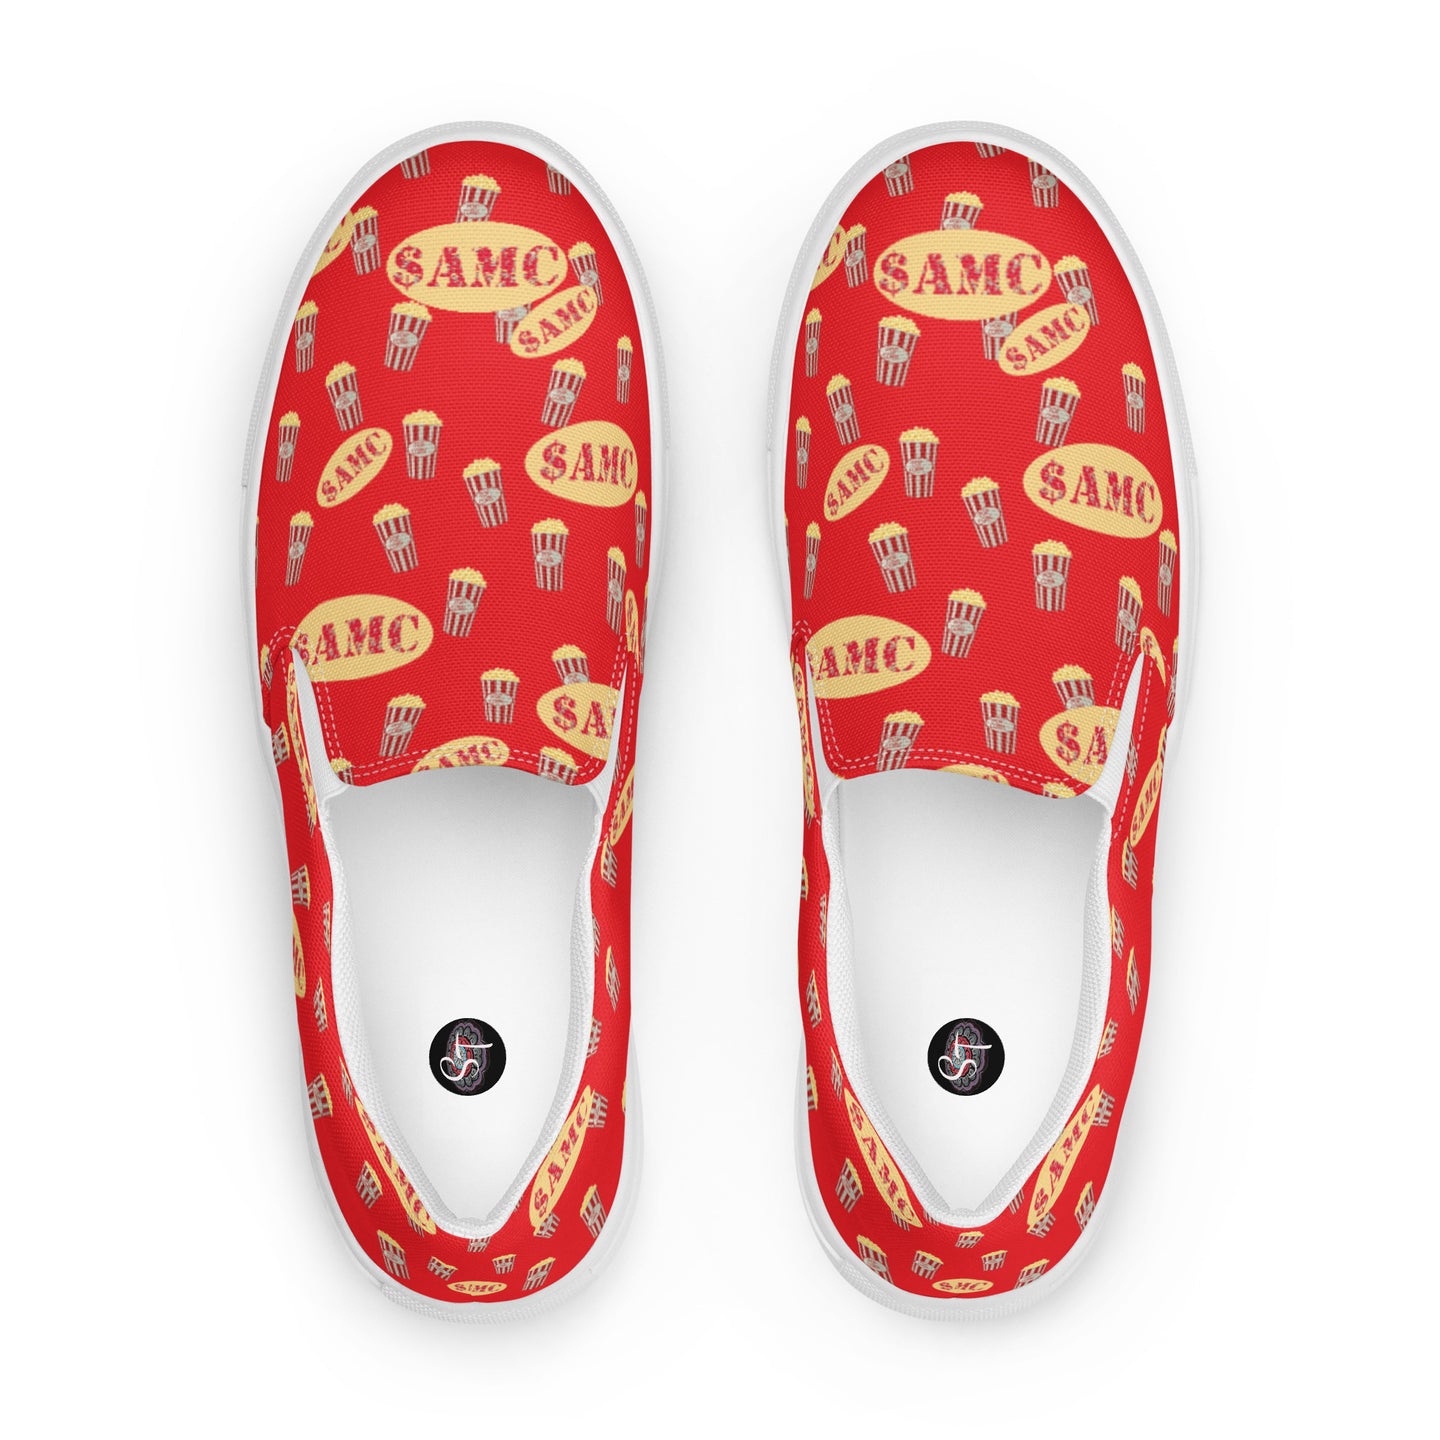 $AMC Men’s slip-on canvas shoes